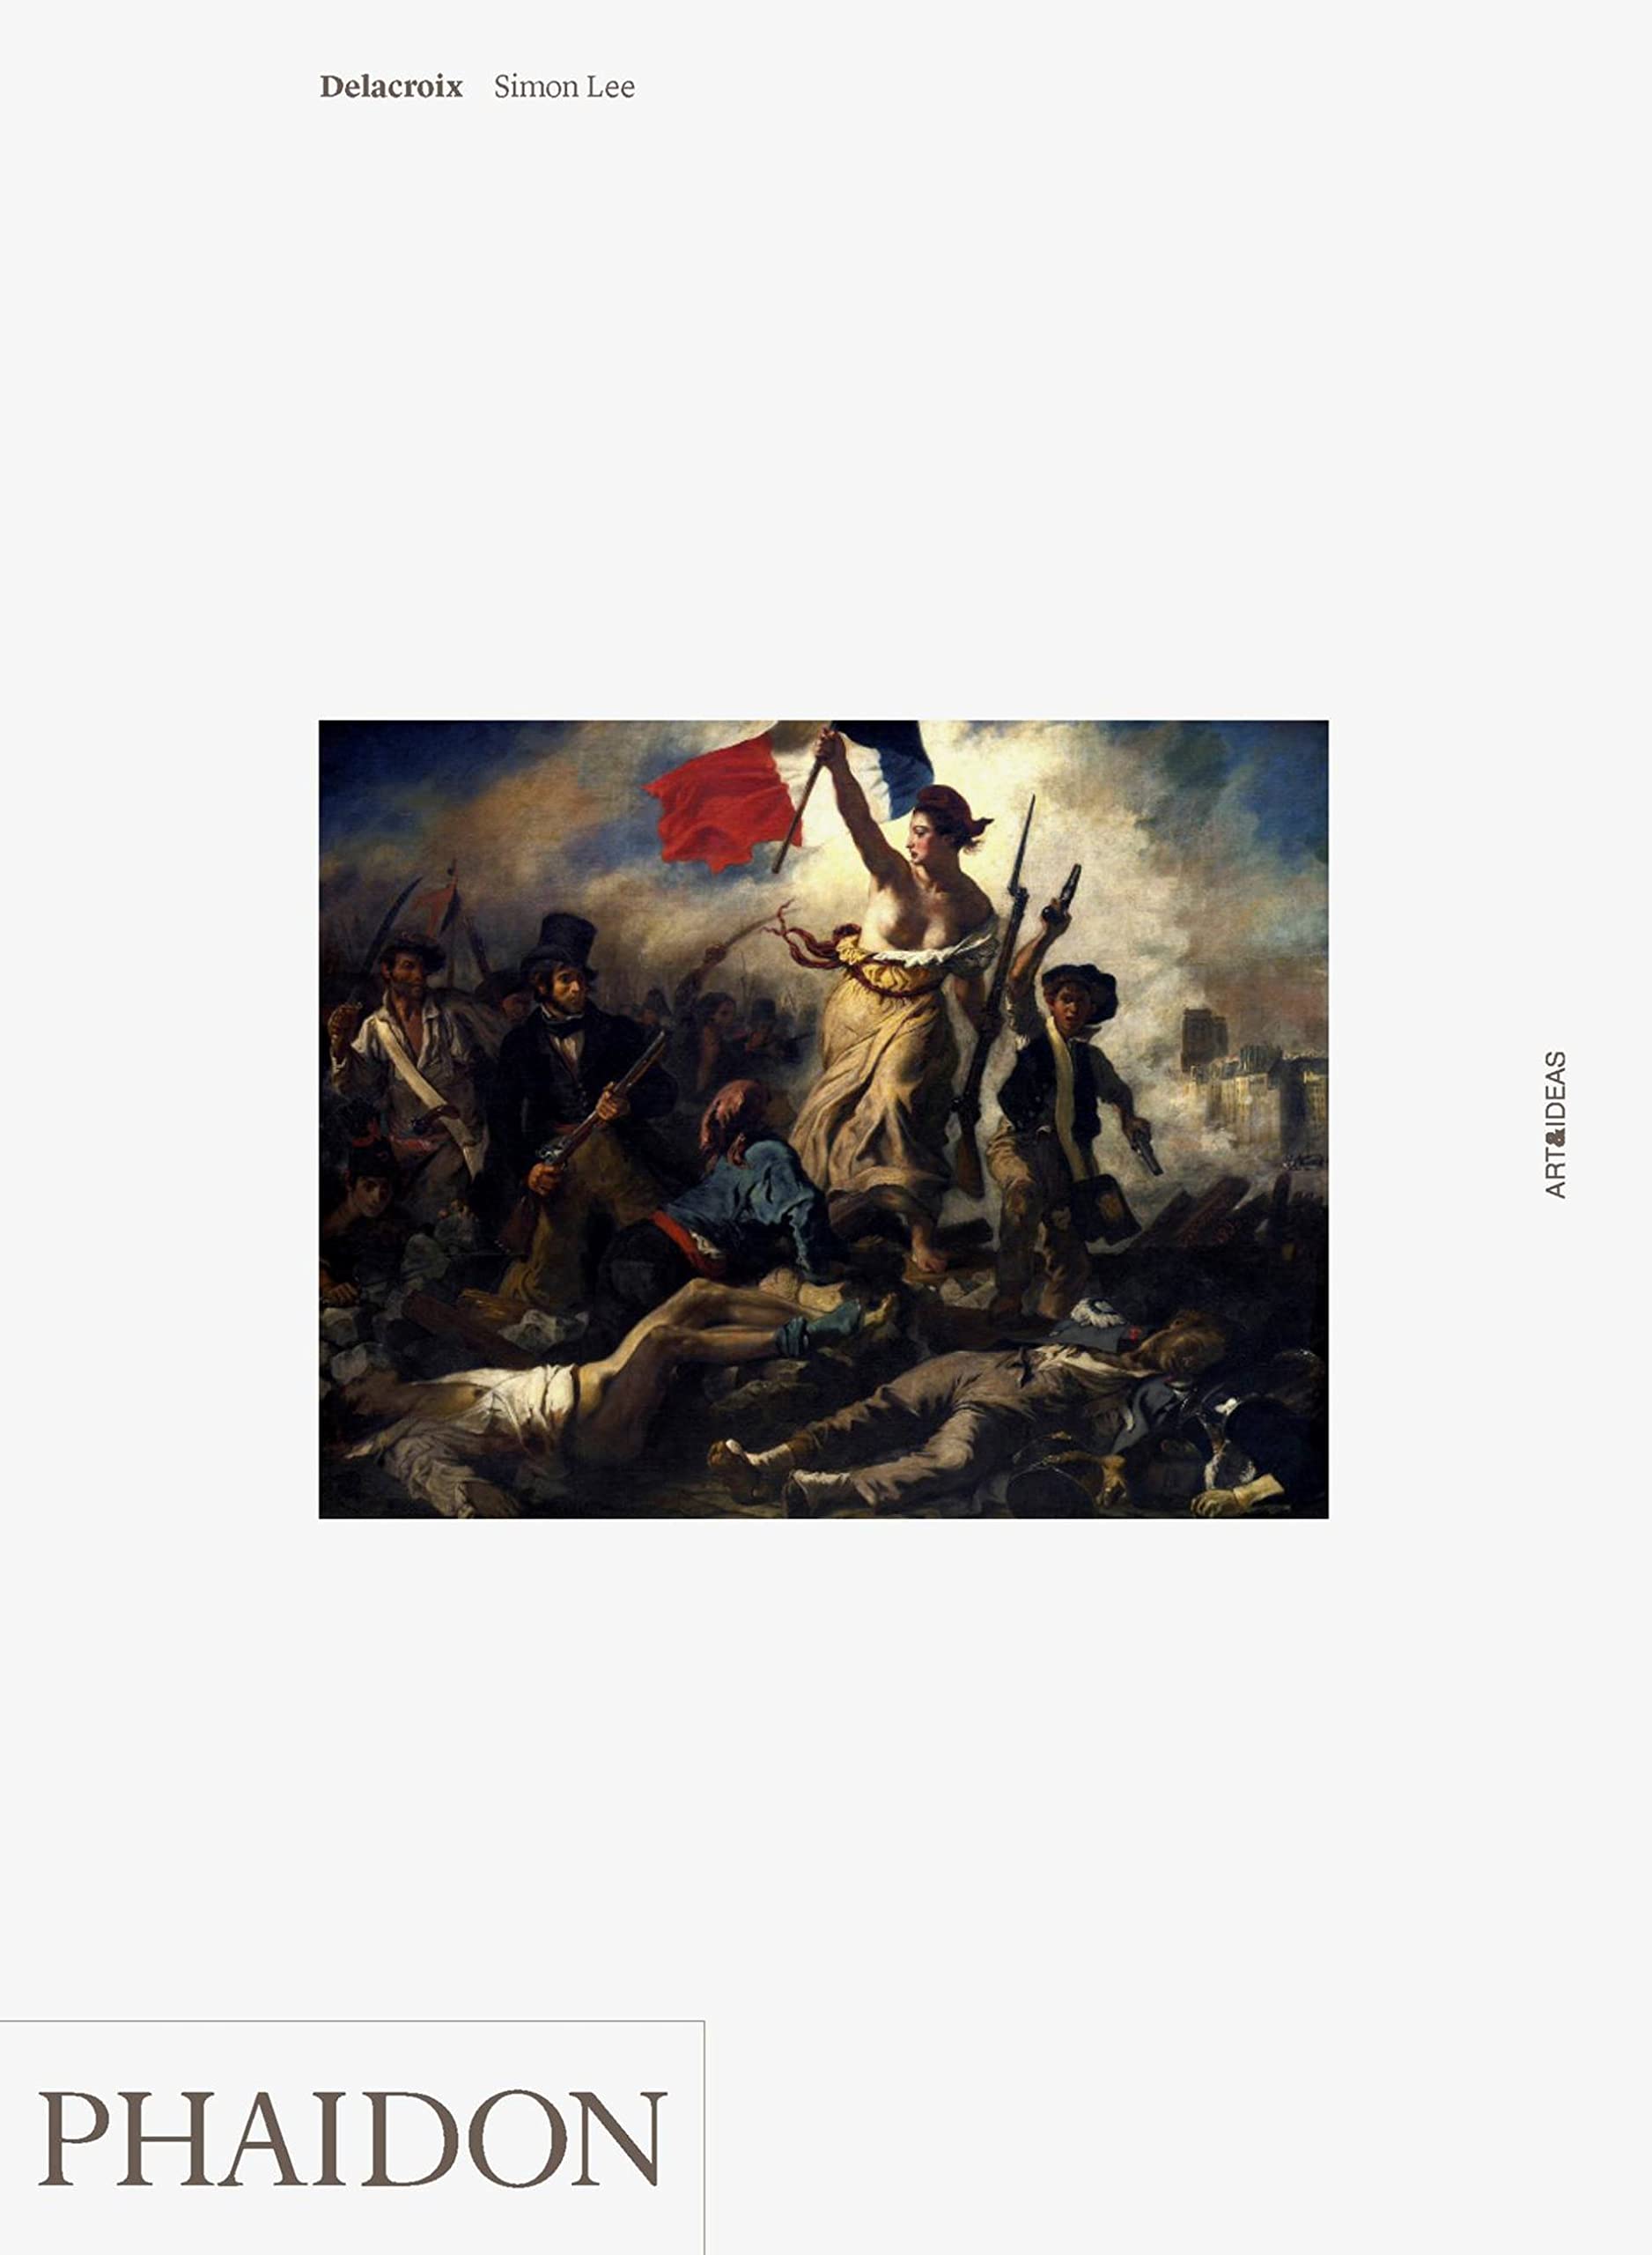 Delacroix (Art & Ideas) by Simon Lee at Chapters online bookstore Pakistan